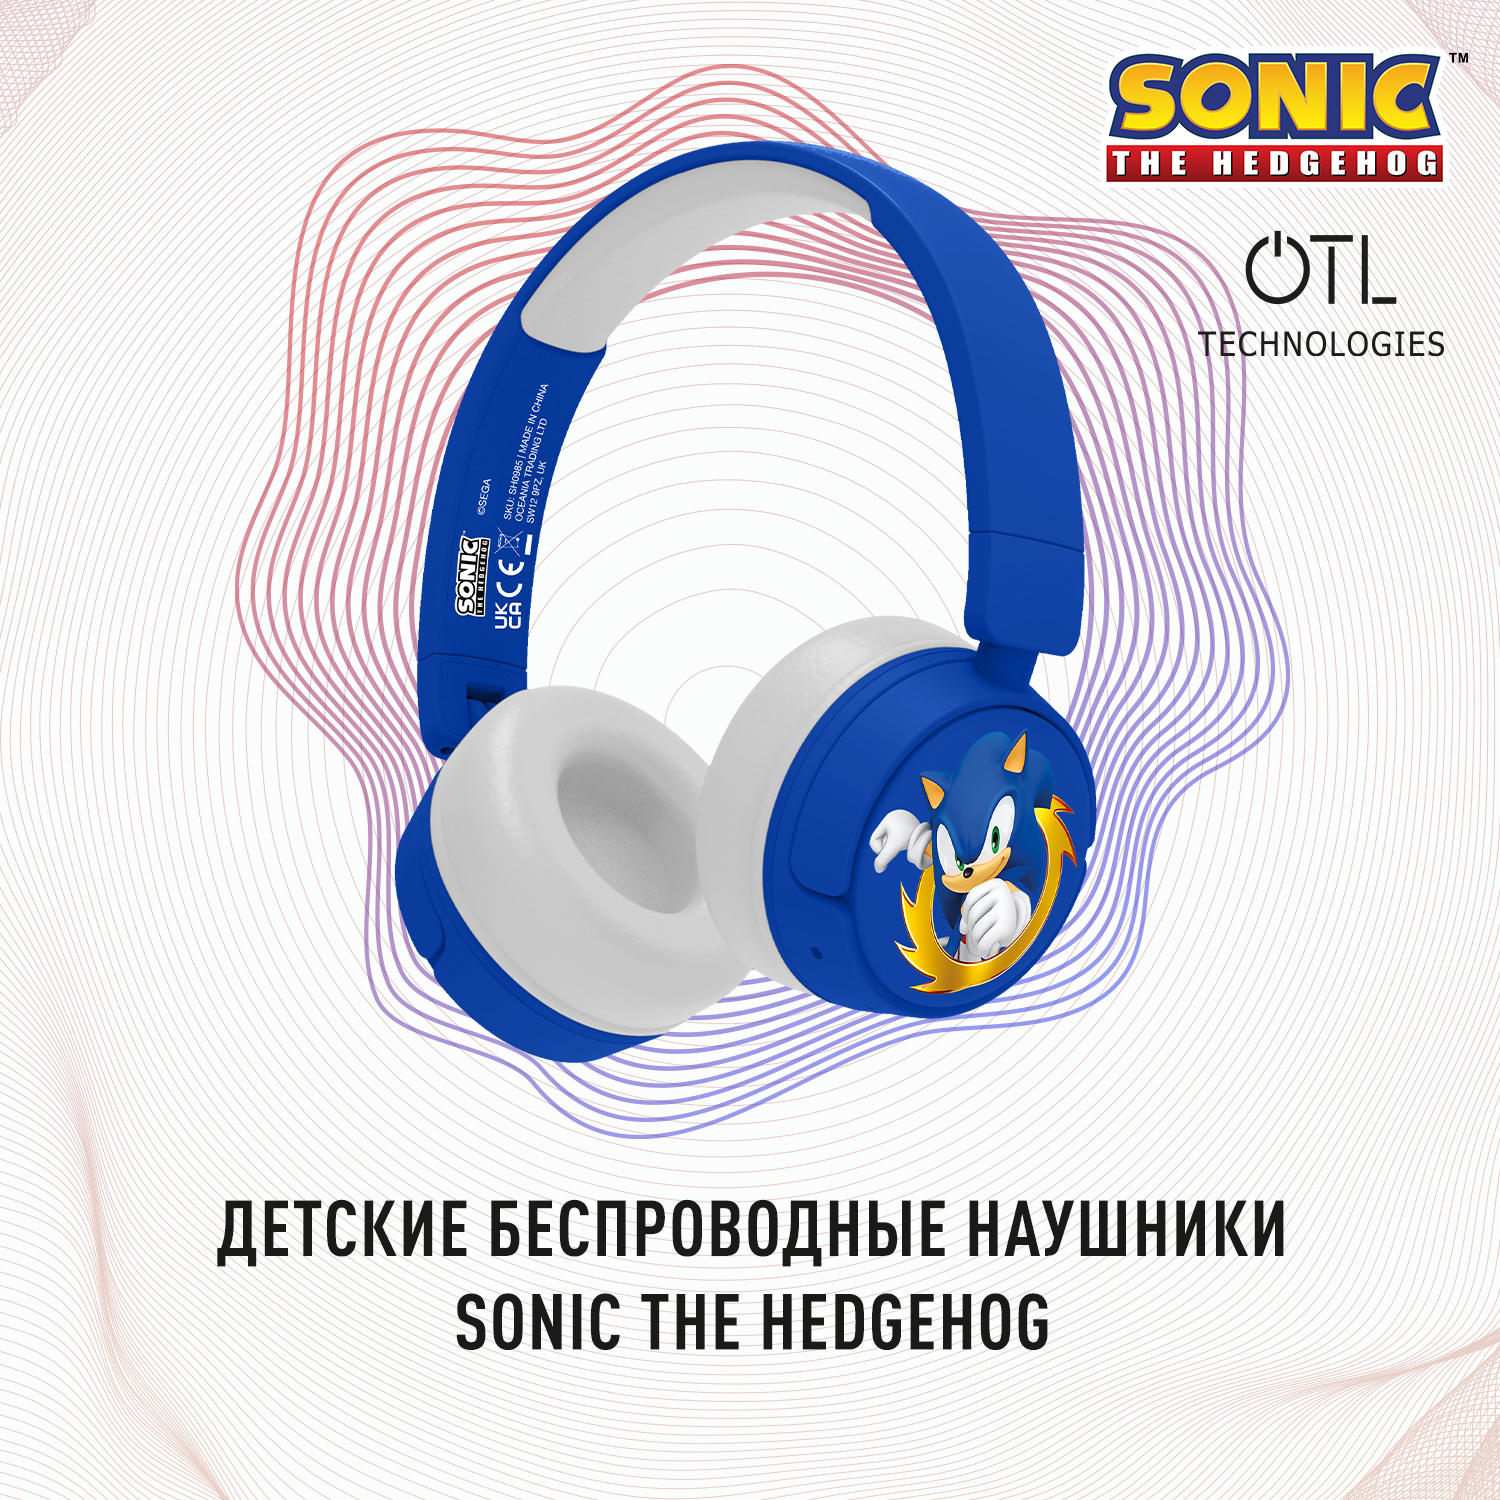 Windows sonic для наушников. Наушники Sonic. Наушники Соник. Наушники Jazwares Sonic Headphones. Как переподклбчить наушники Соник.